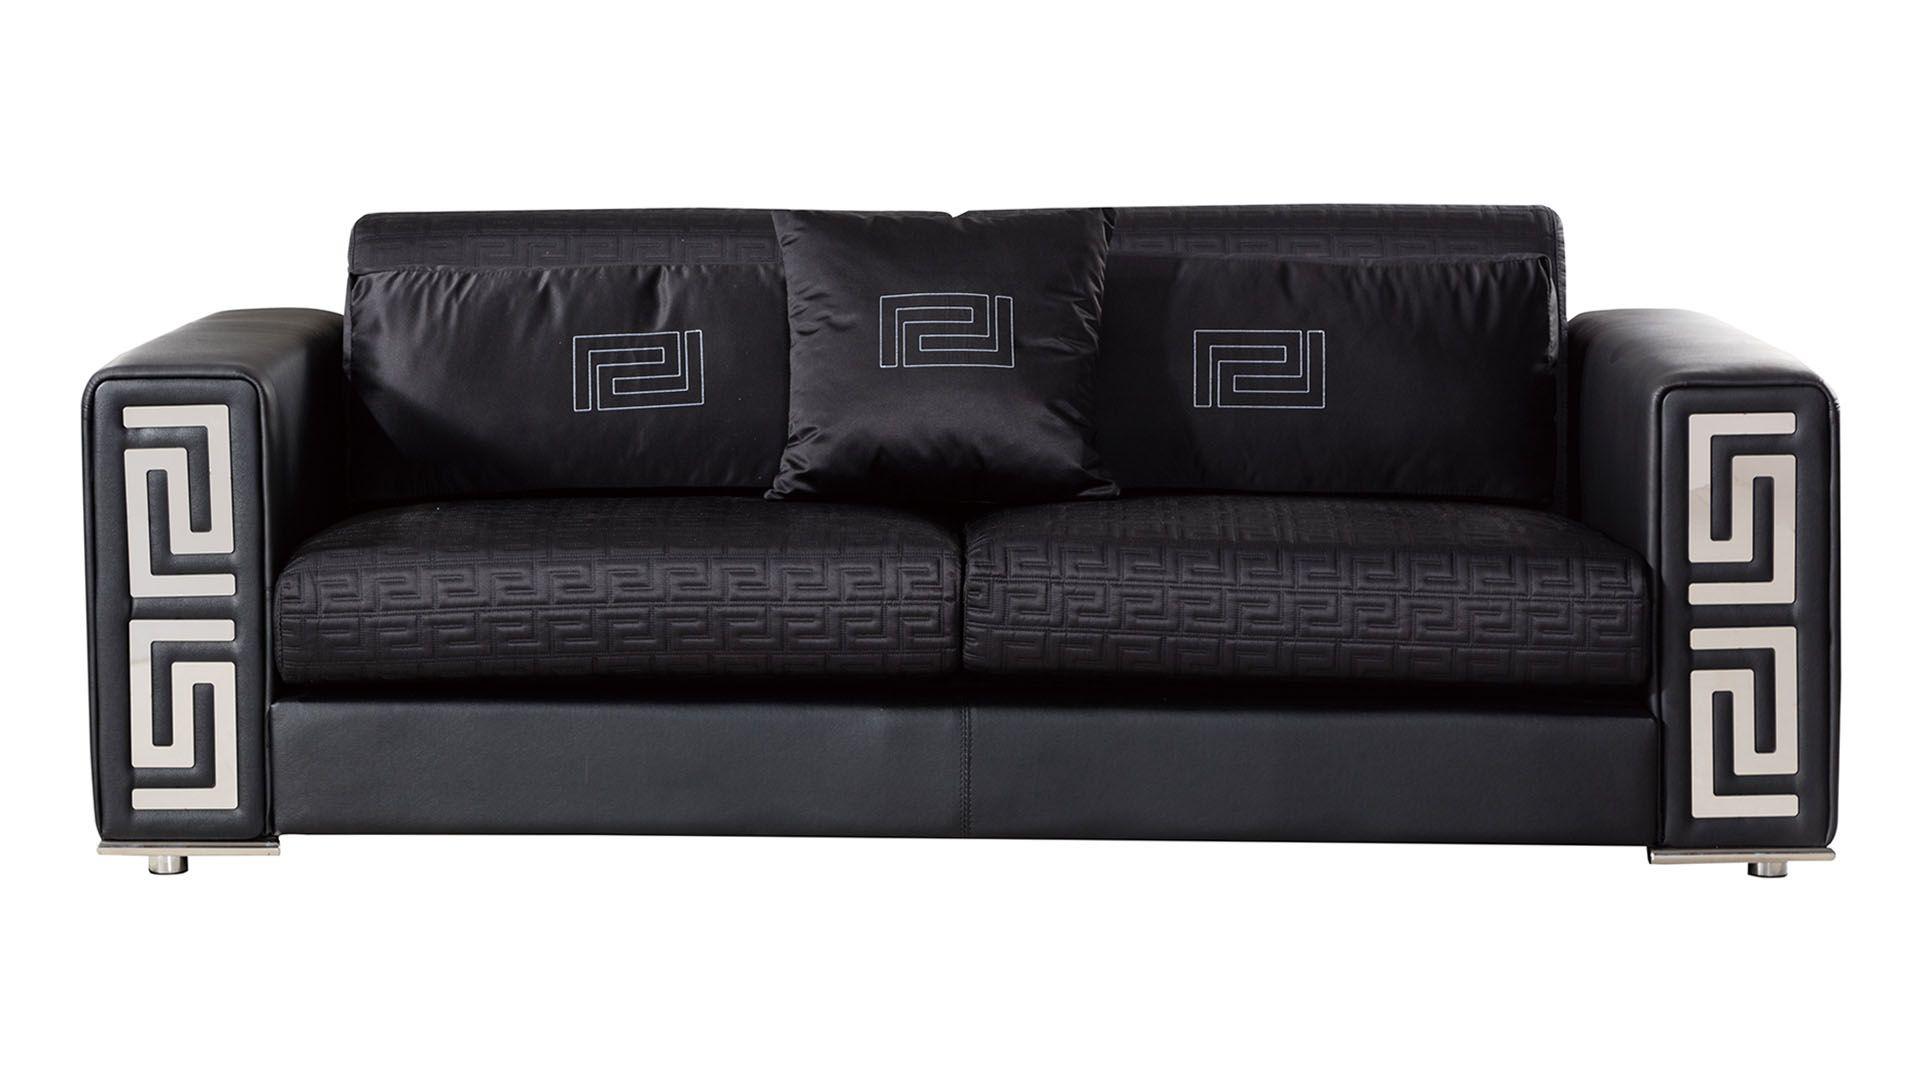 

    
American Eagle Furniture AE223-BK Sofa Set Black AE223-BK-3PC
